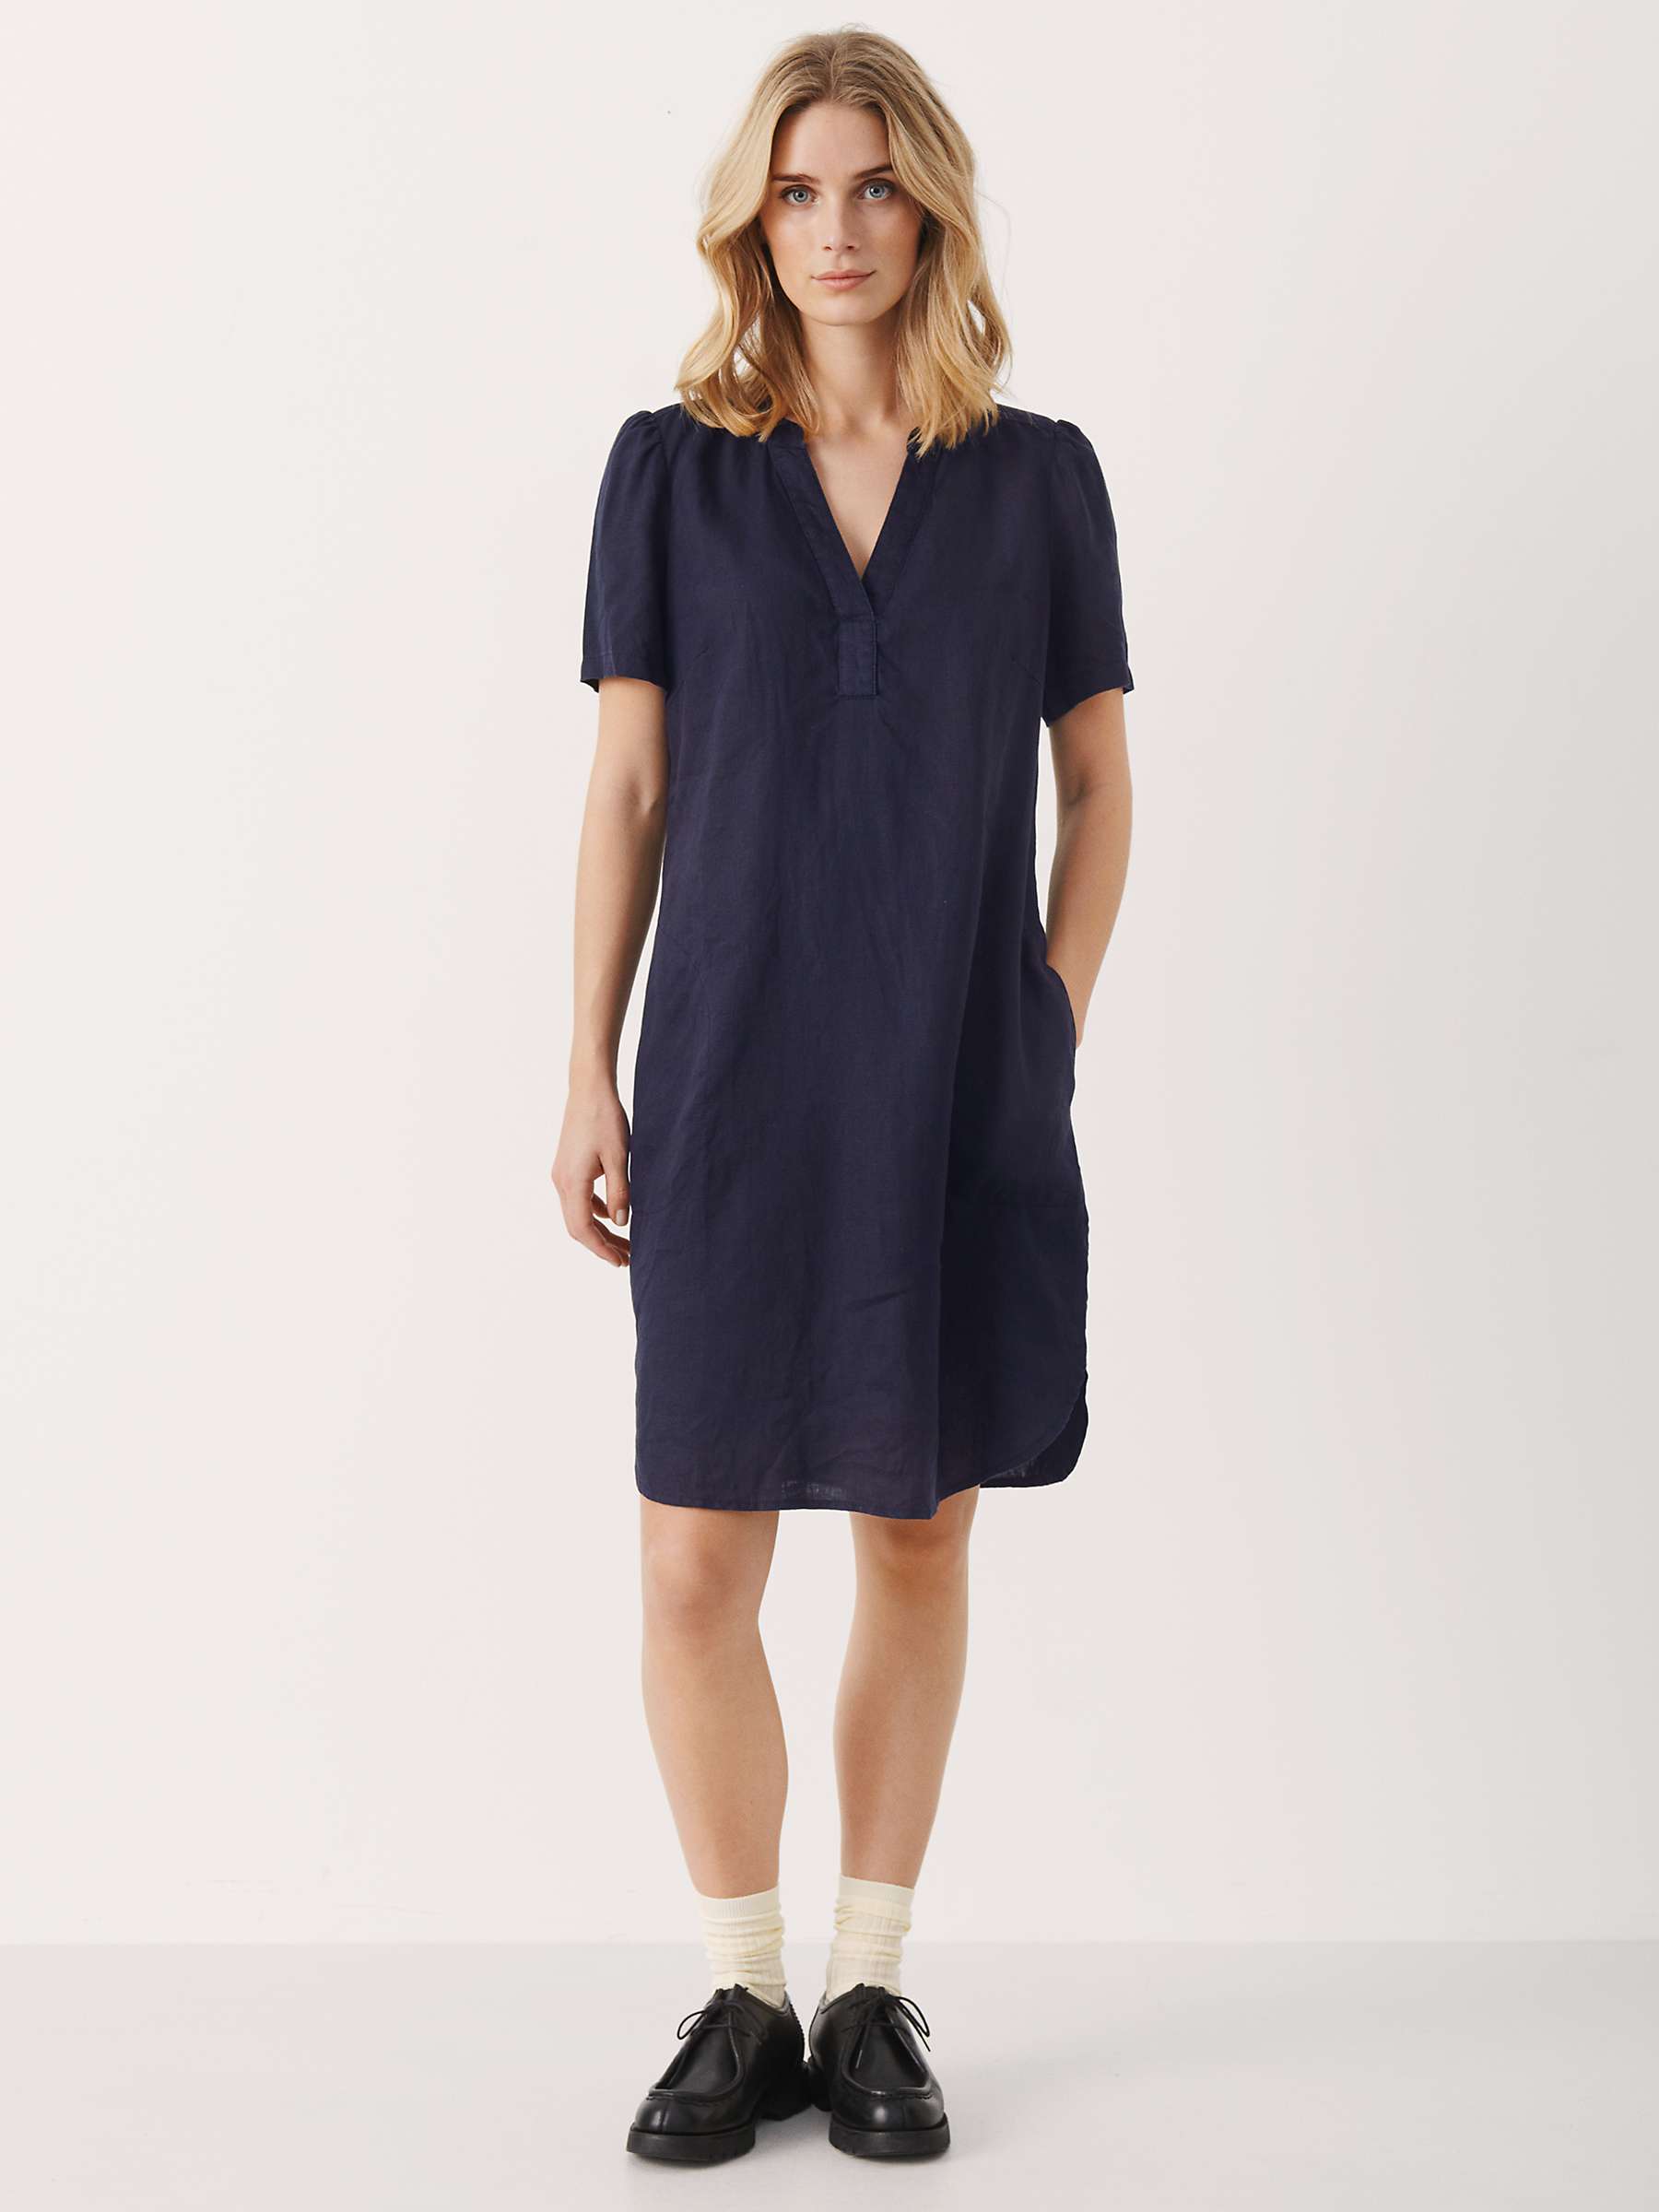 Buy Part Two Aminase Short Sleeve Linen V-Neck Dress Online at johnlewis.com